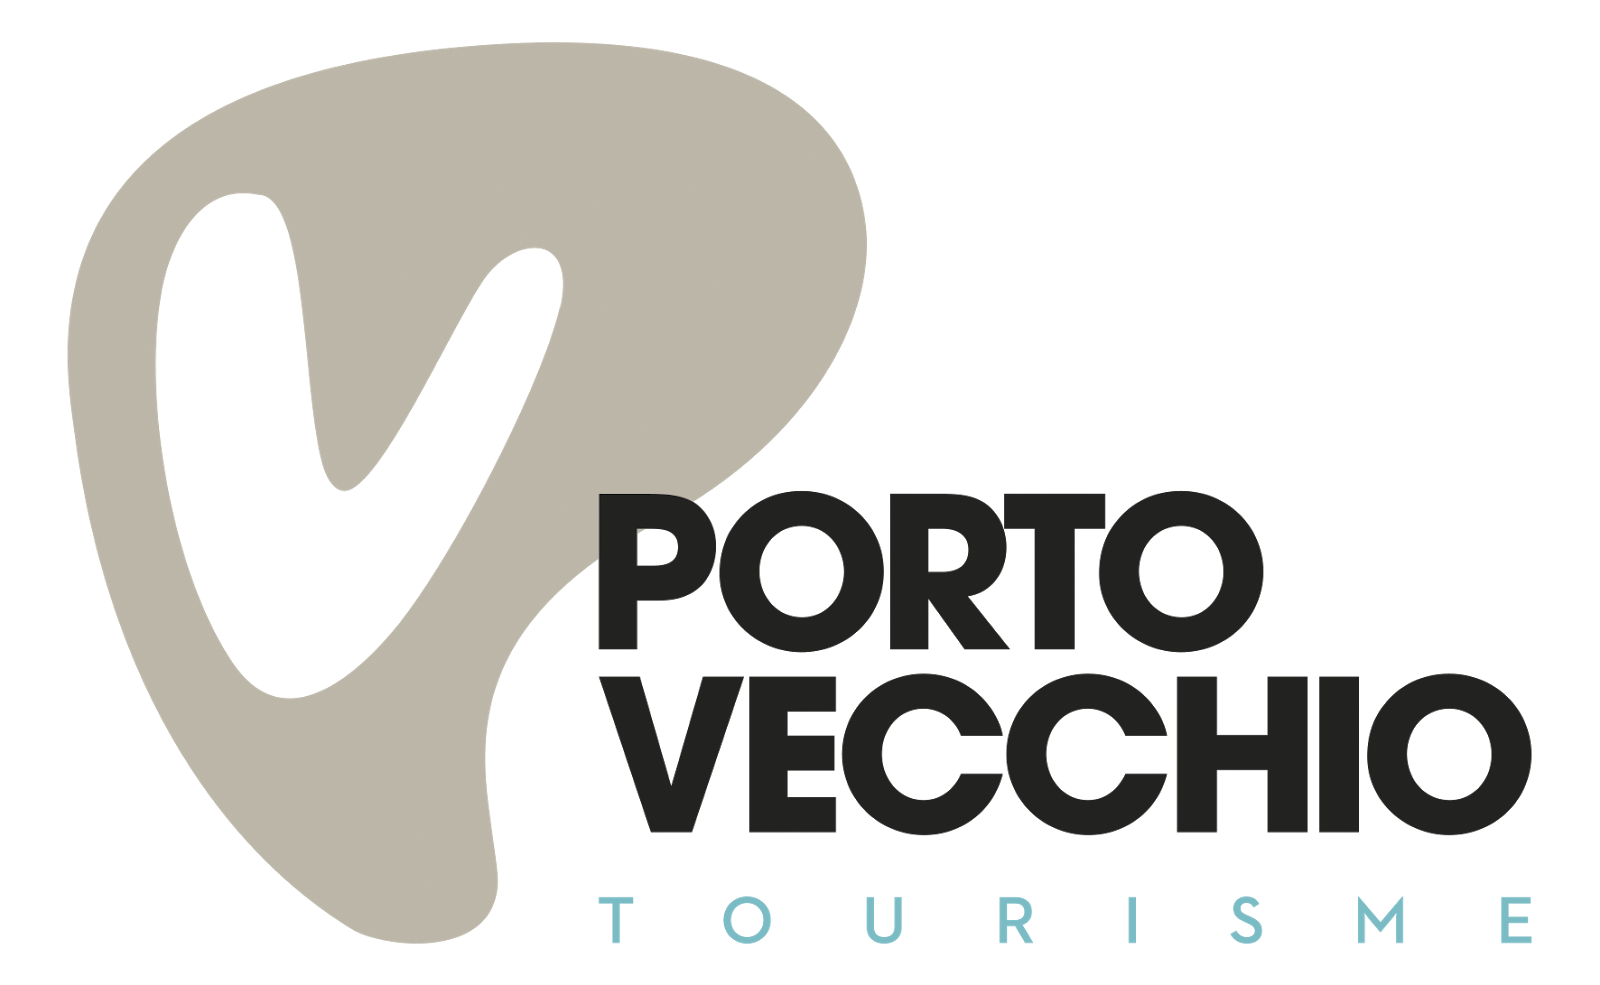 Porto-Vecchio Tourisme